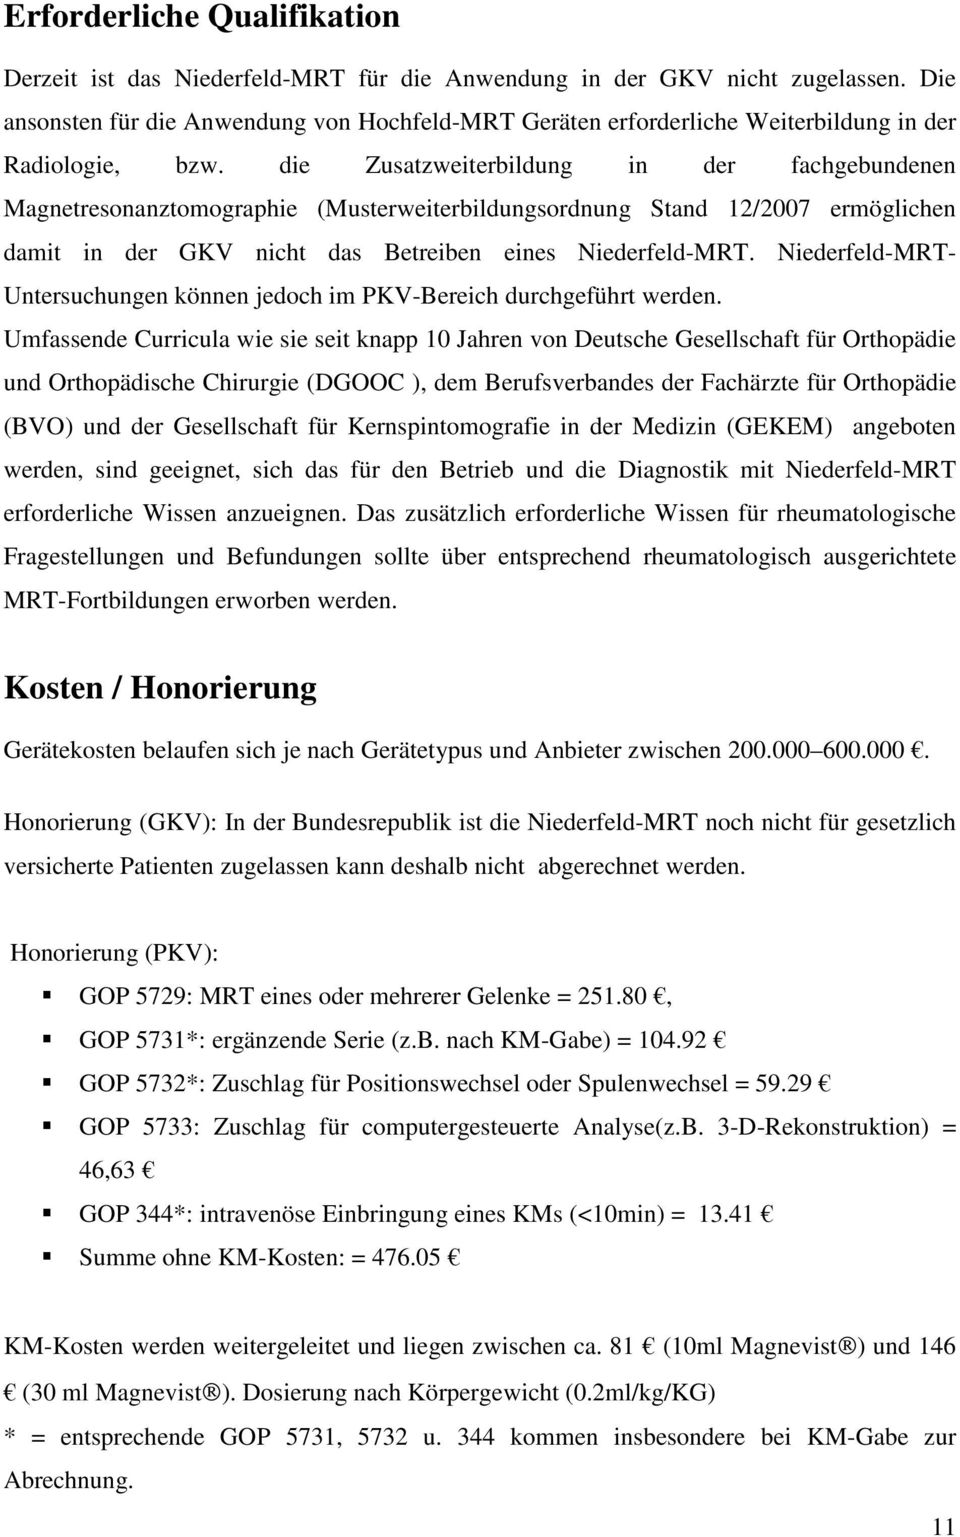 die Zusatzweiterbildung in der fachgebundenen Magnetresonanztomographie (Musterweiterbildungsordnung Stand 12/2007 ermöglichen damit in der GKV nicht das Betreiben eines Niederfeld-MRT.